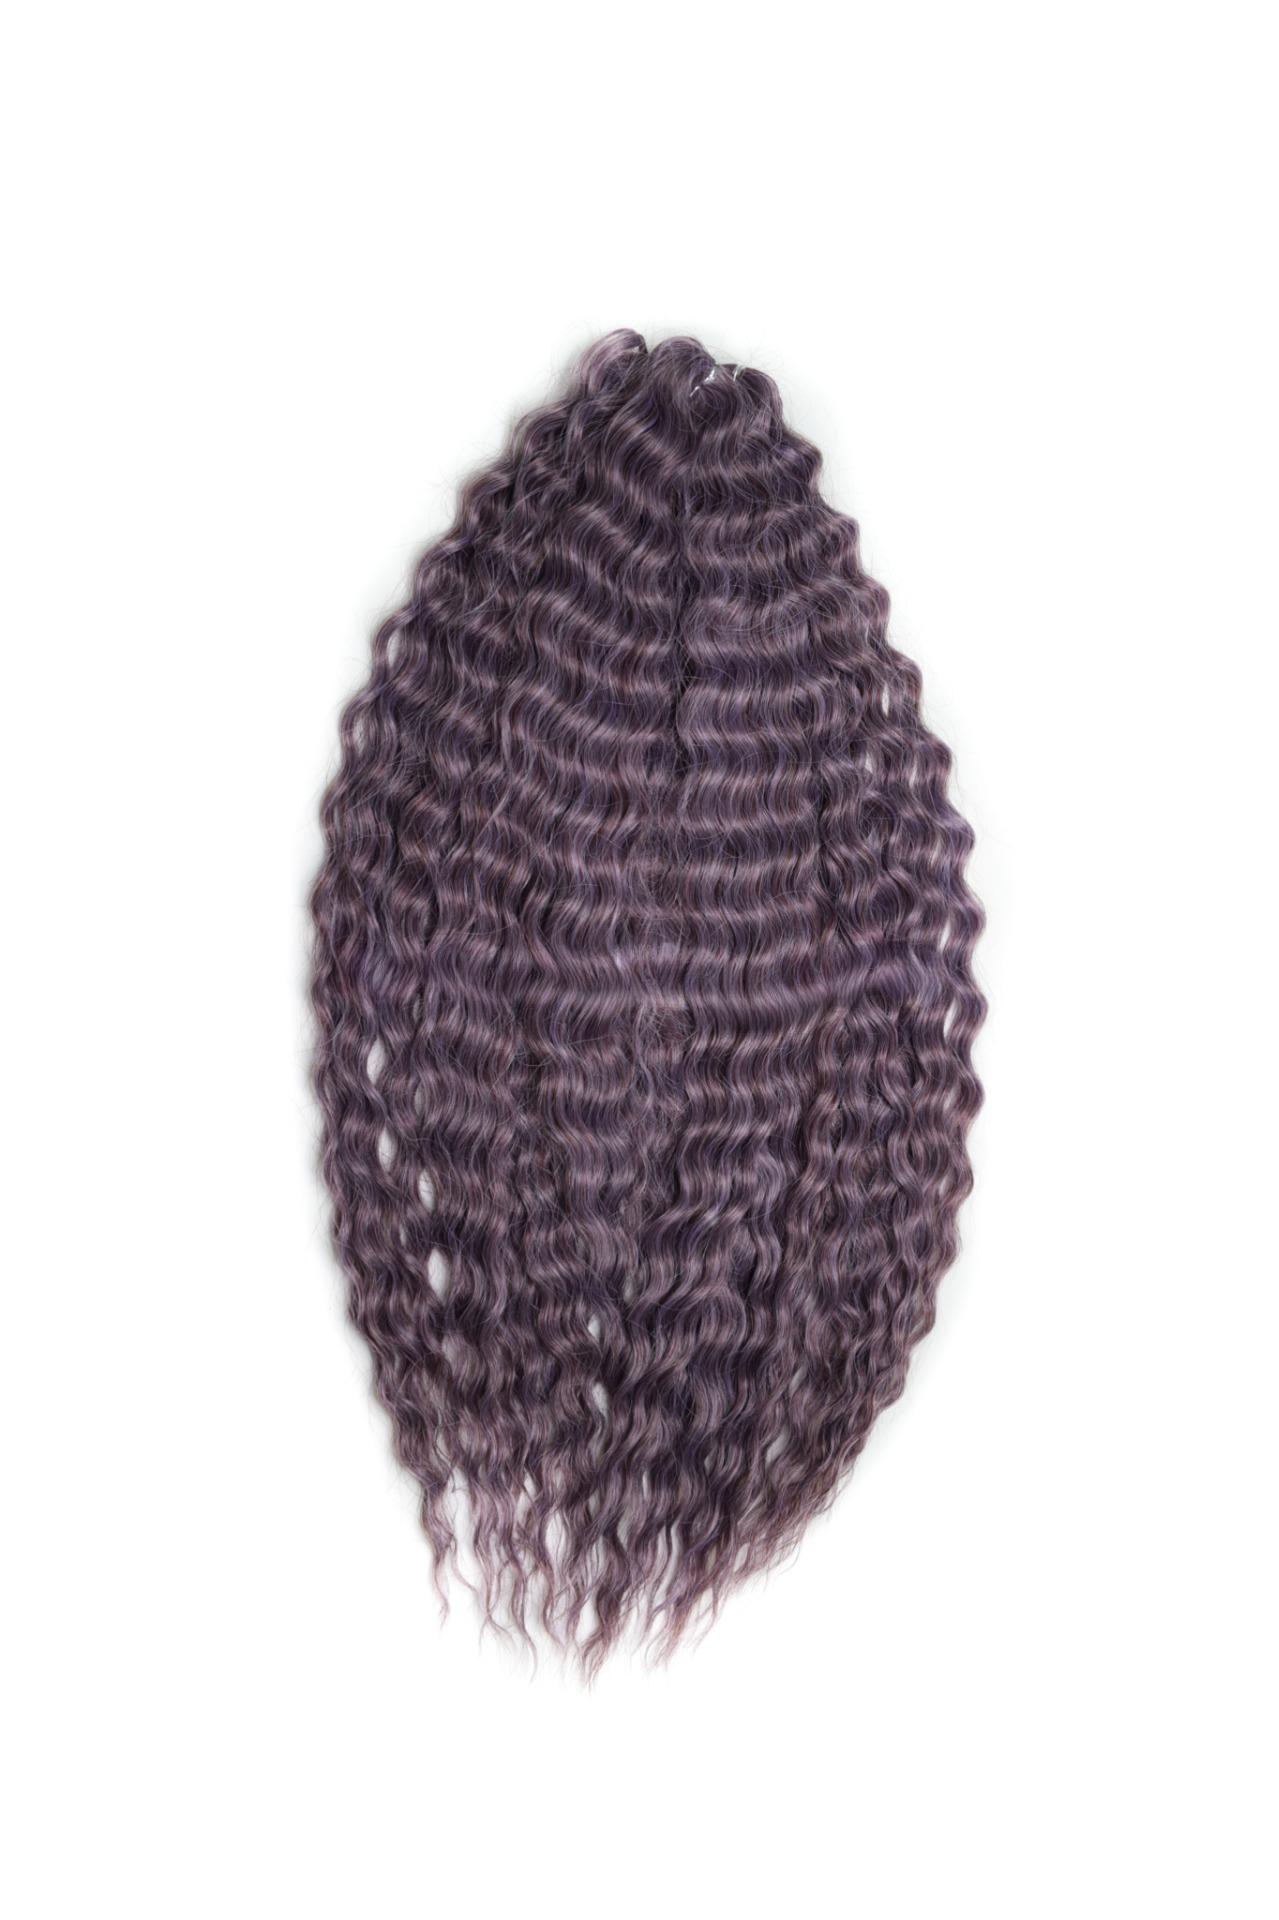 Афрокудри для плетения волос Ariel Ариэль цвет PURPLE GREY длина 60см вес 300г афрокудри для плетения волос ariel ариэль coral розовый длина 60см вес 300г